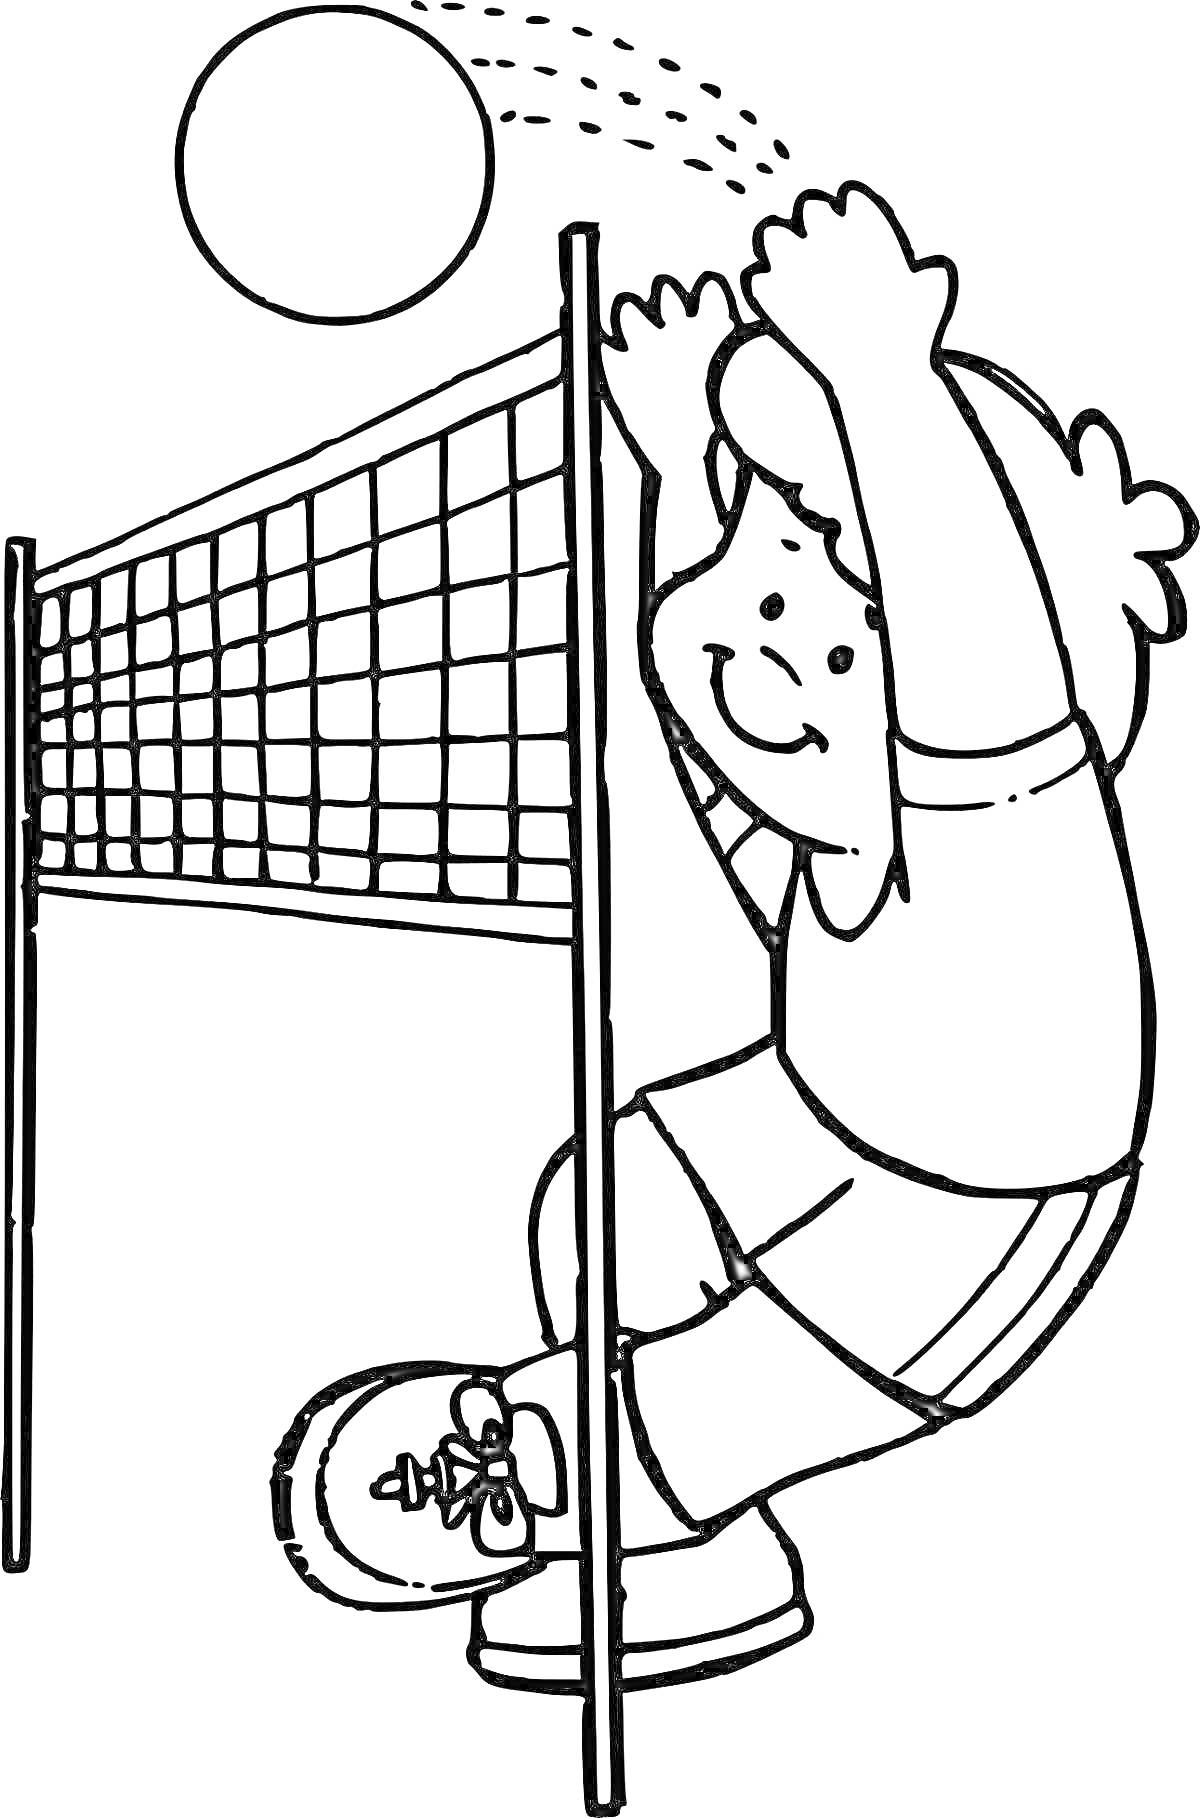 Раскраска Ребёнок играет в волейбол, перекидывает мяч через сетку.